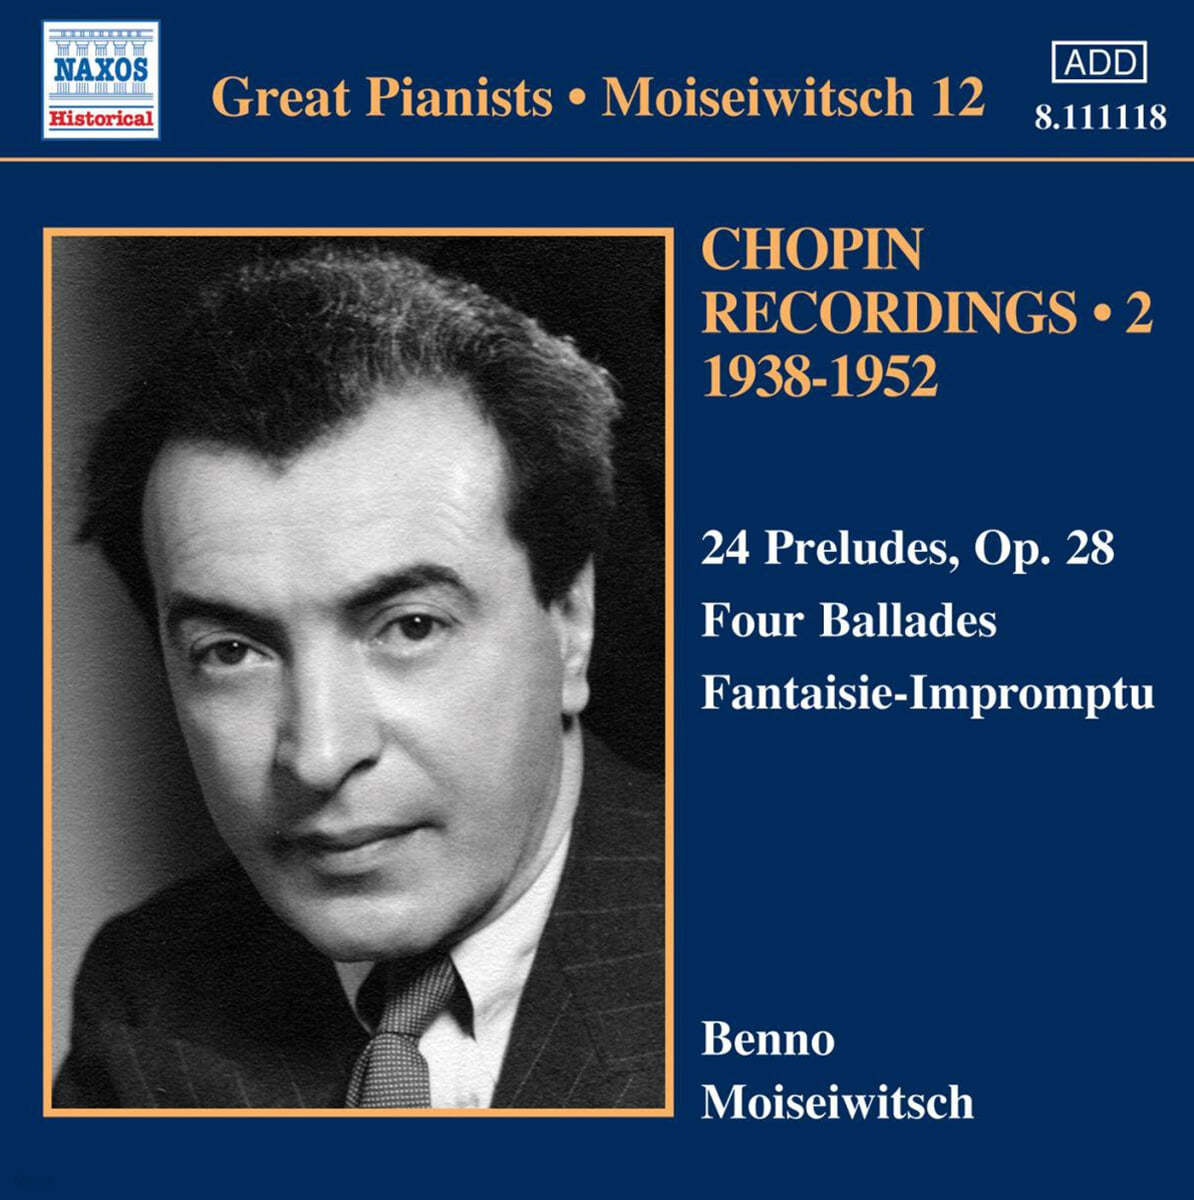 Benno Moiseiwitsch 쇼팽: 24개의 전주곡, 발라드, 즉흥 환상곡 - 벤노 모이세이비치 